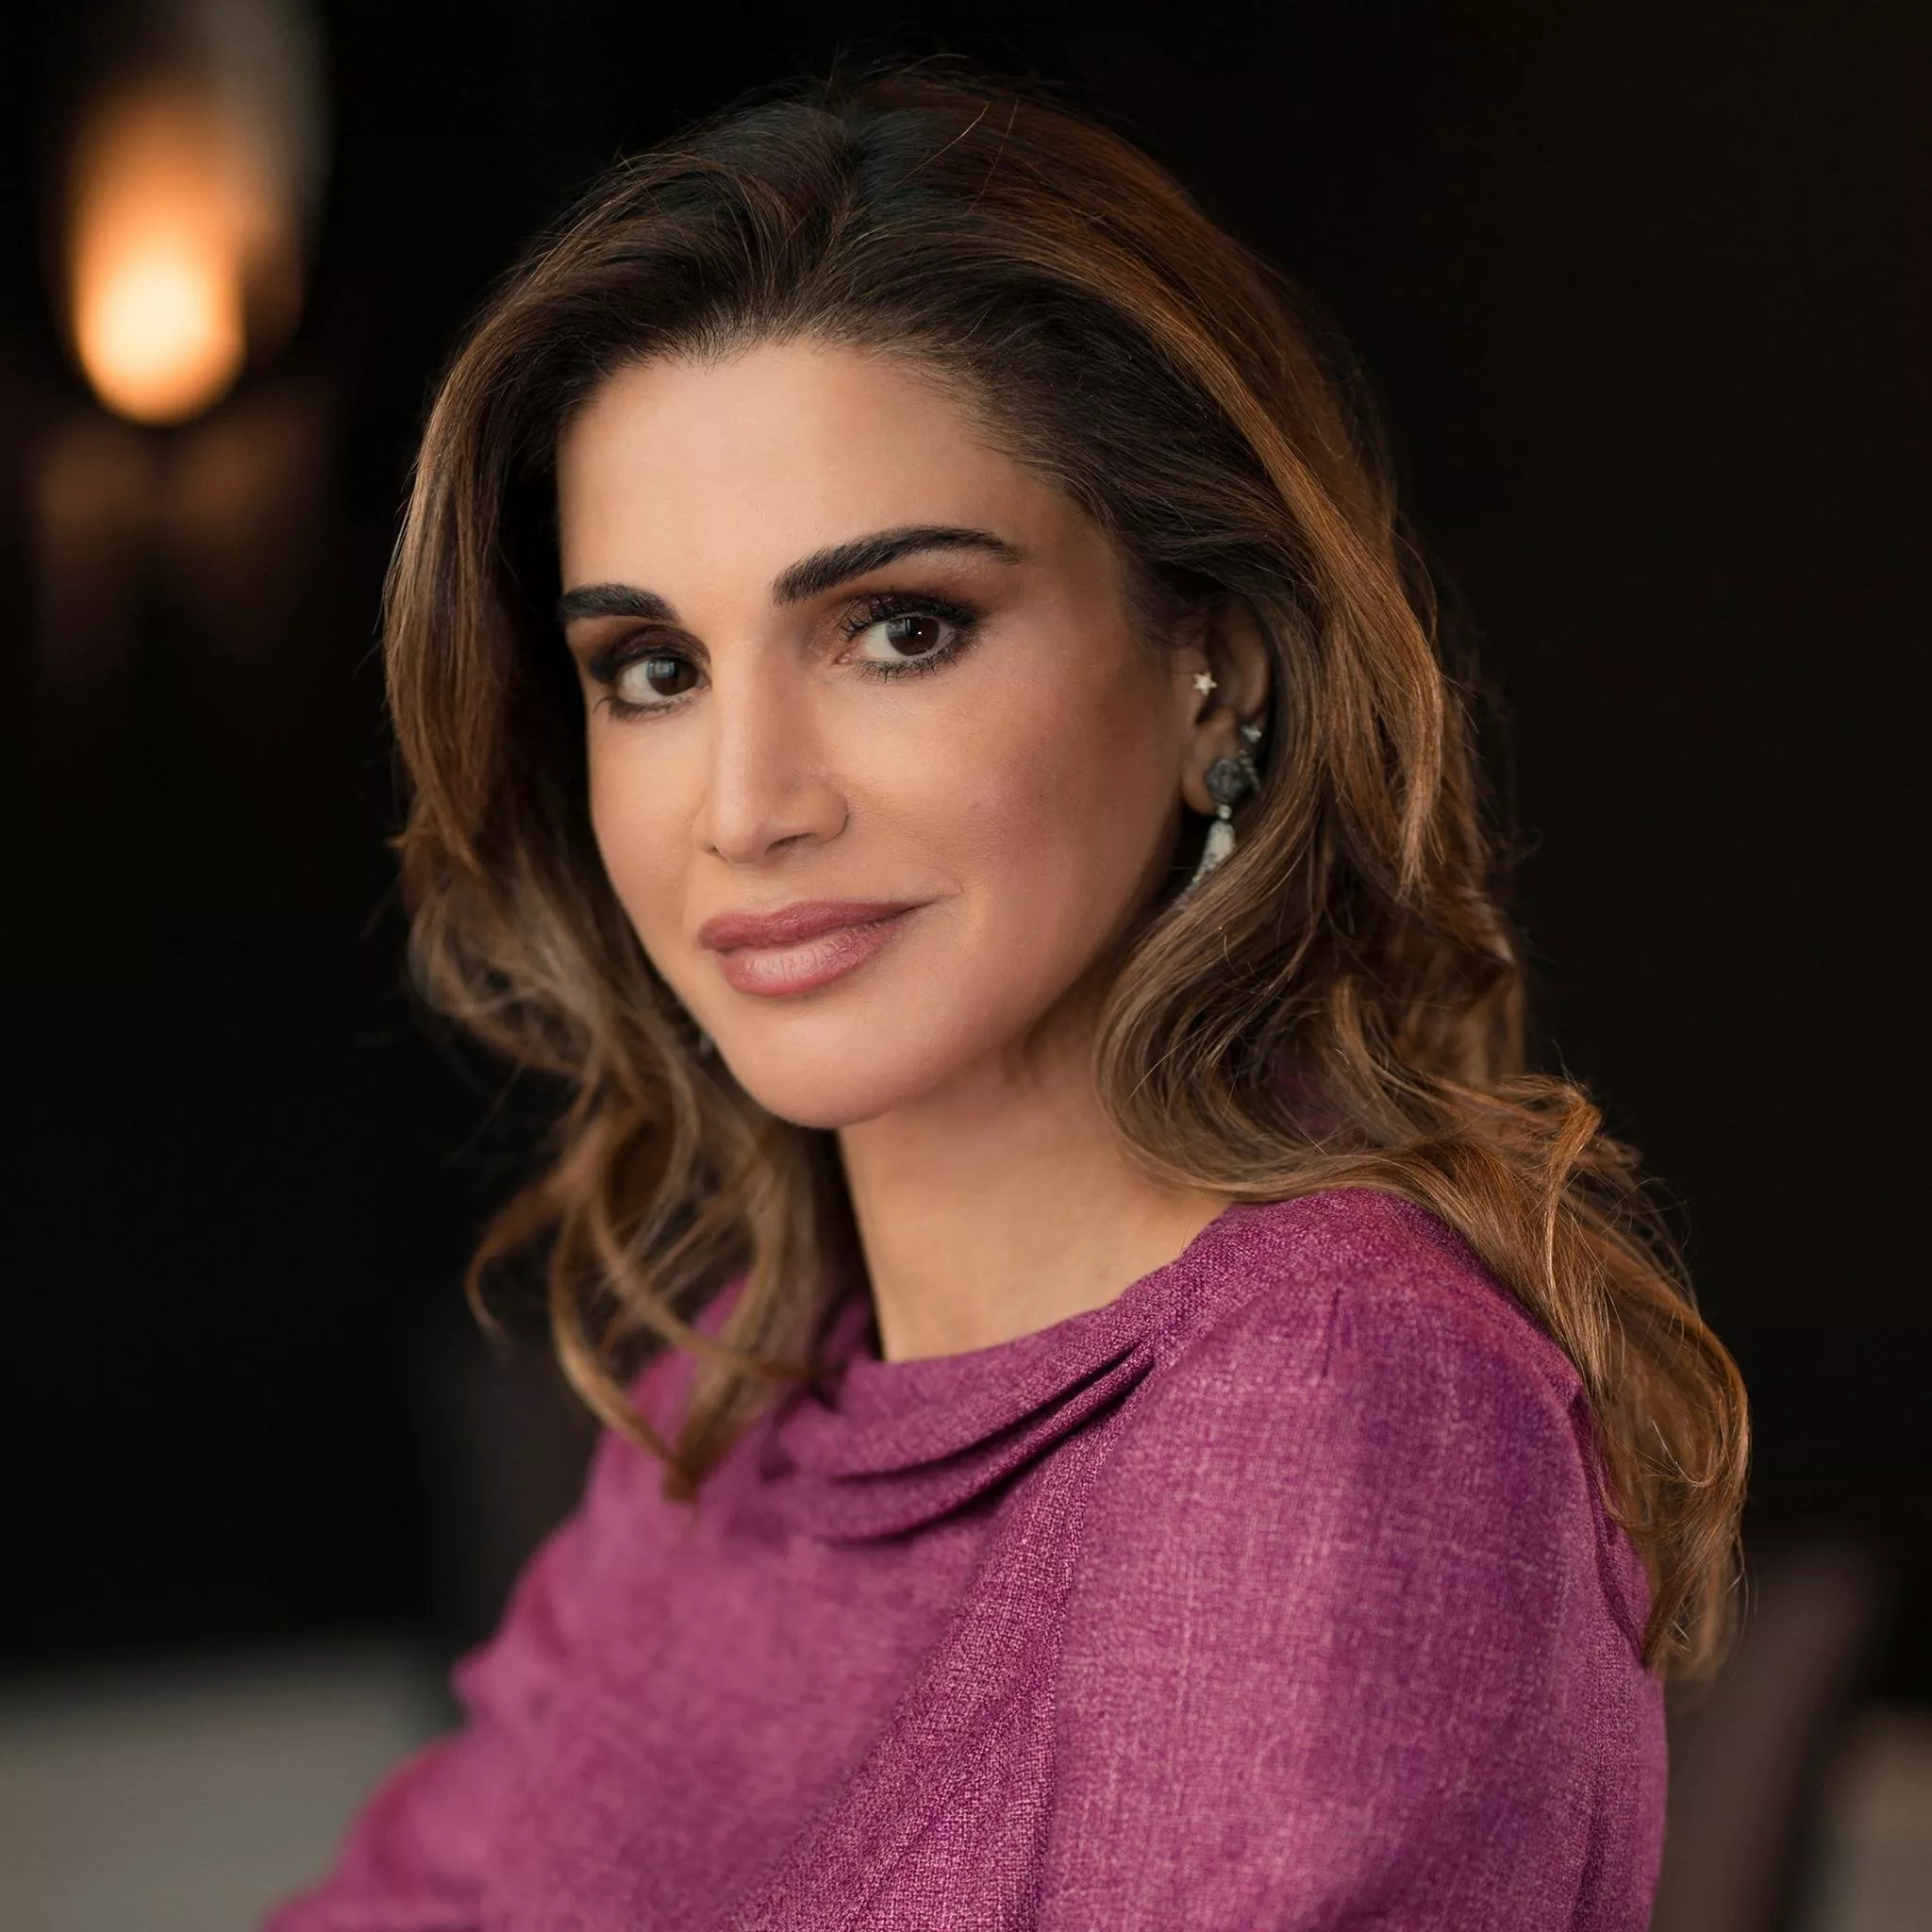 الاميرة ديانا أجمل شخصية ملكية في العالم، تَليها الملكة رانيا!